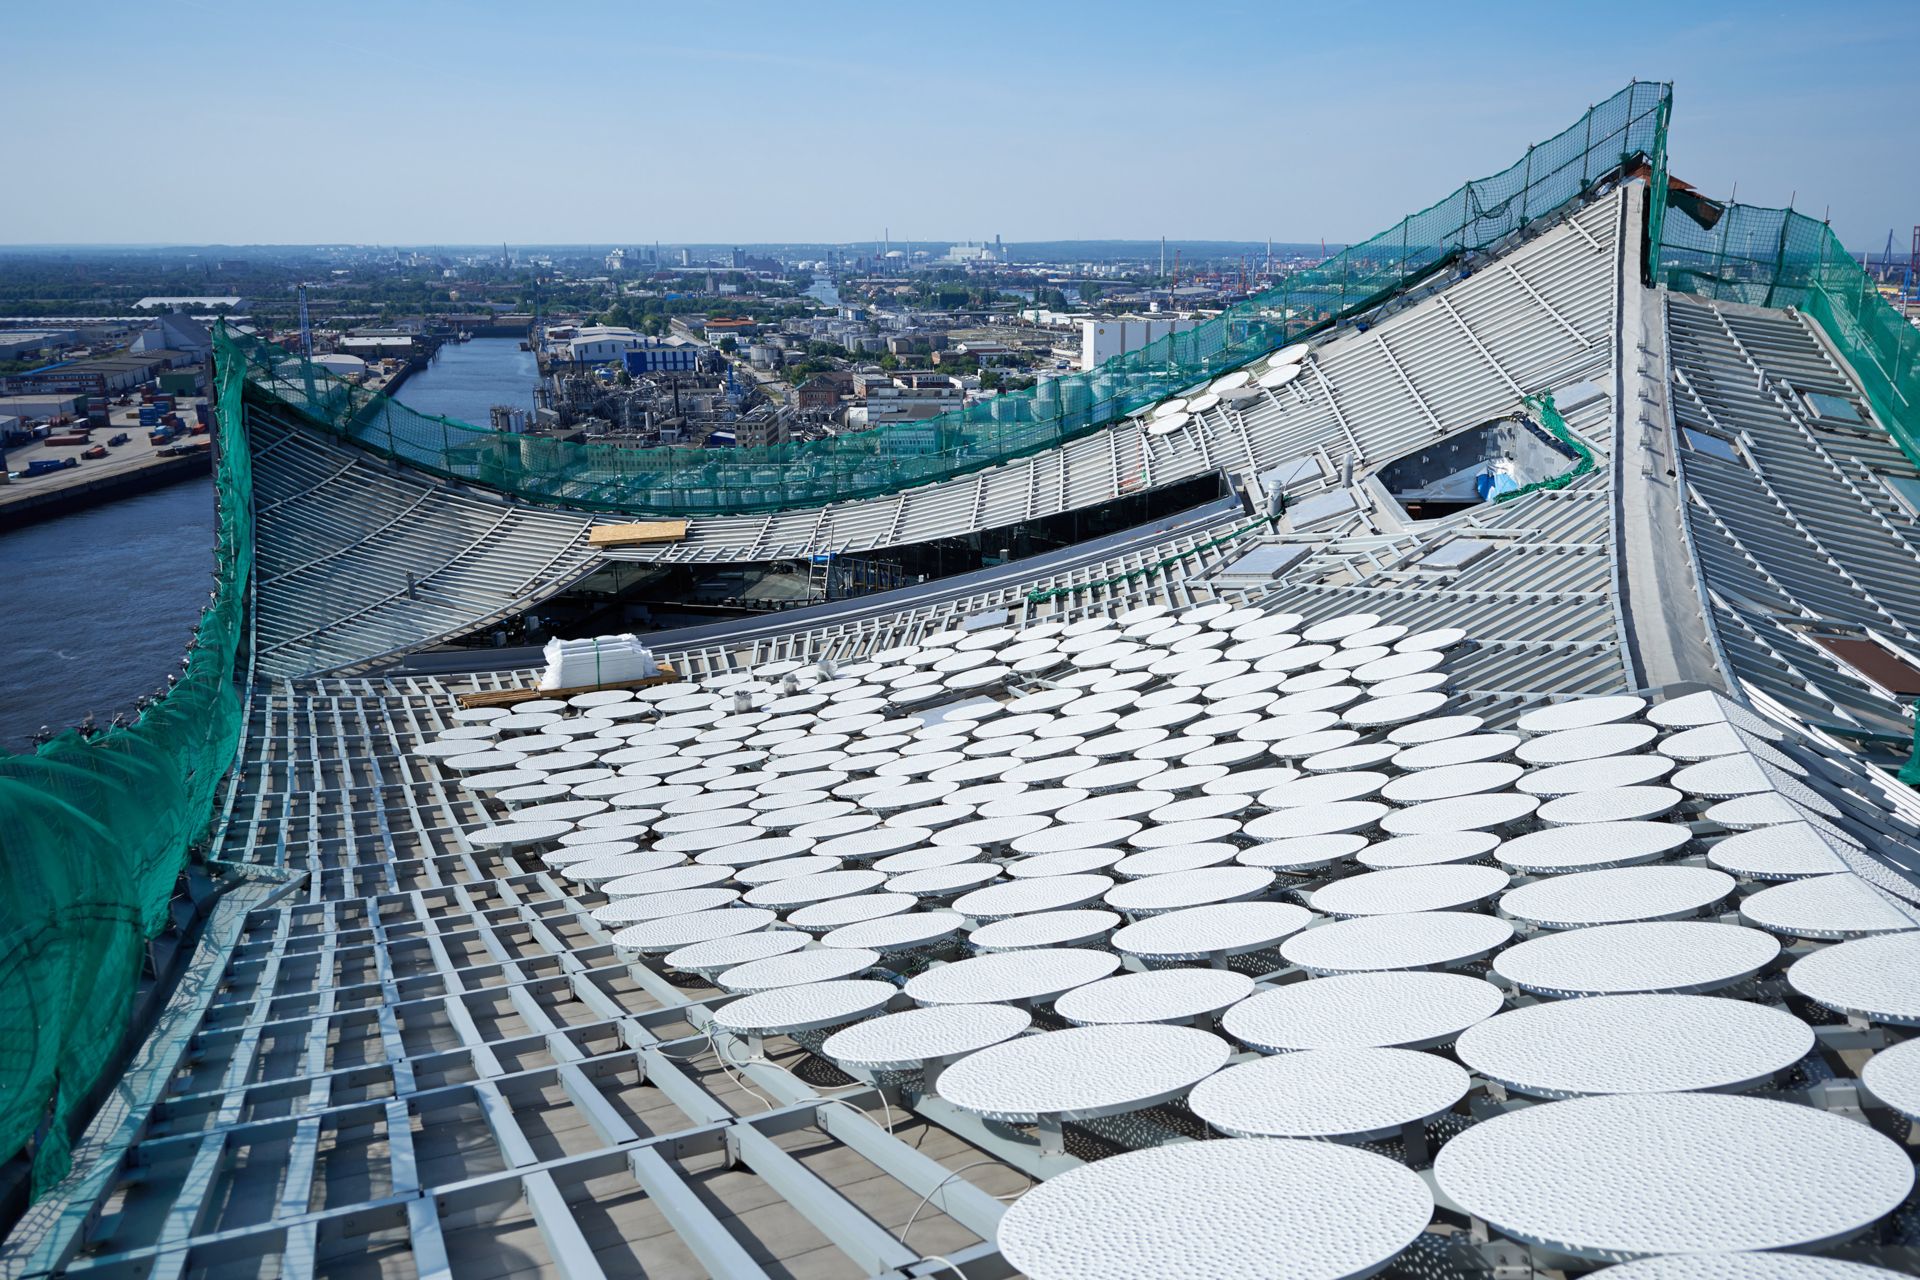 Sarnafil waterproofing membrane on roofing area of Elbphilharmonie in Hamburg 